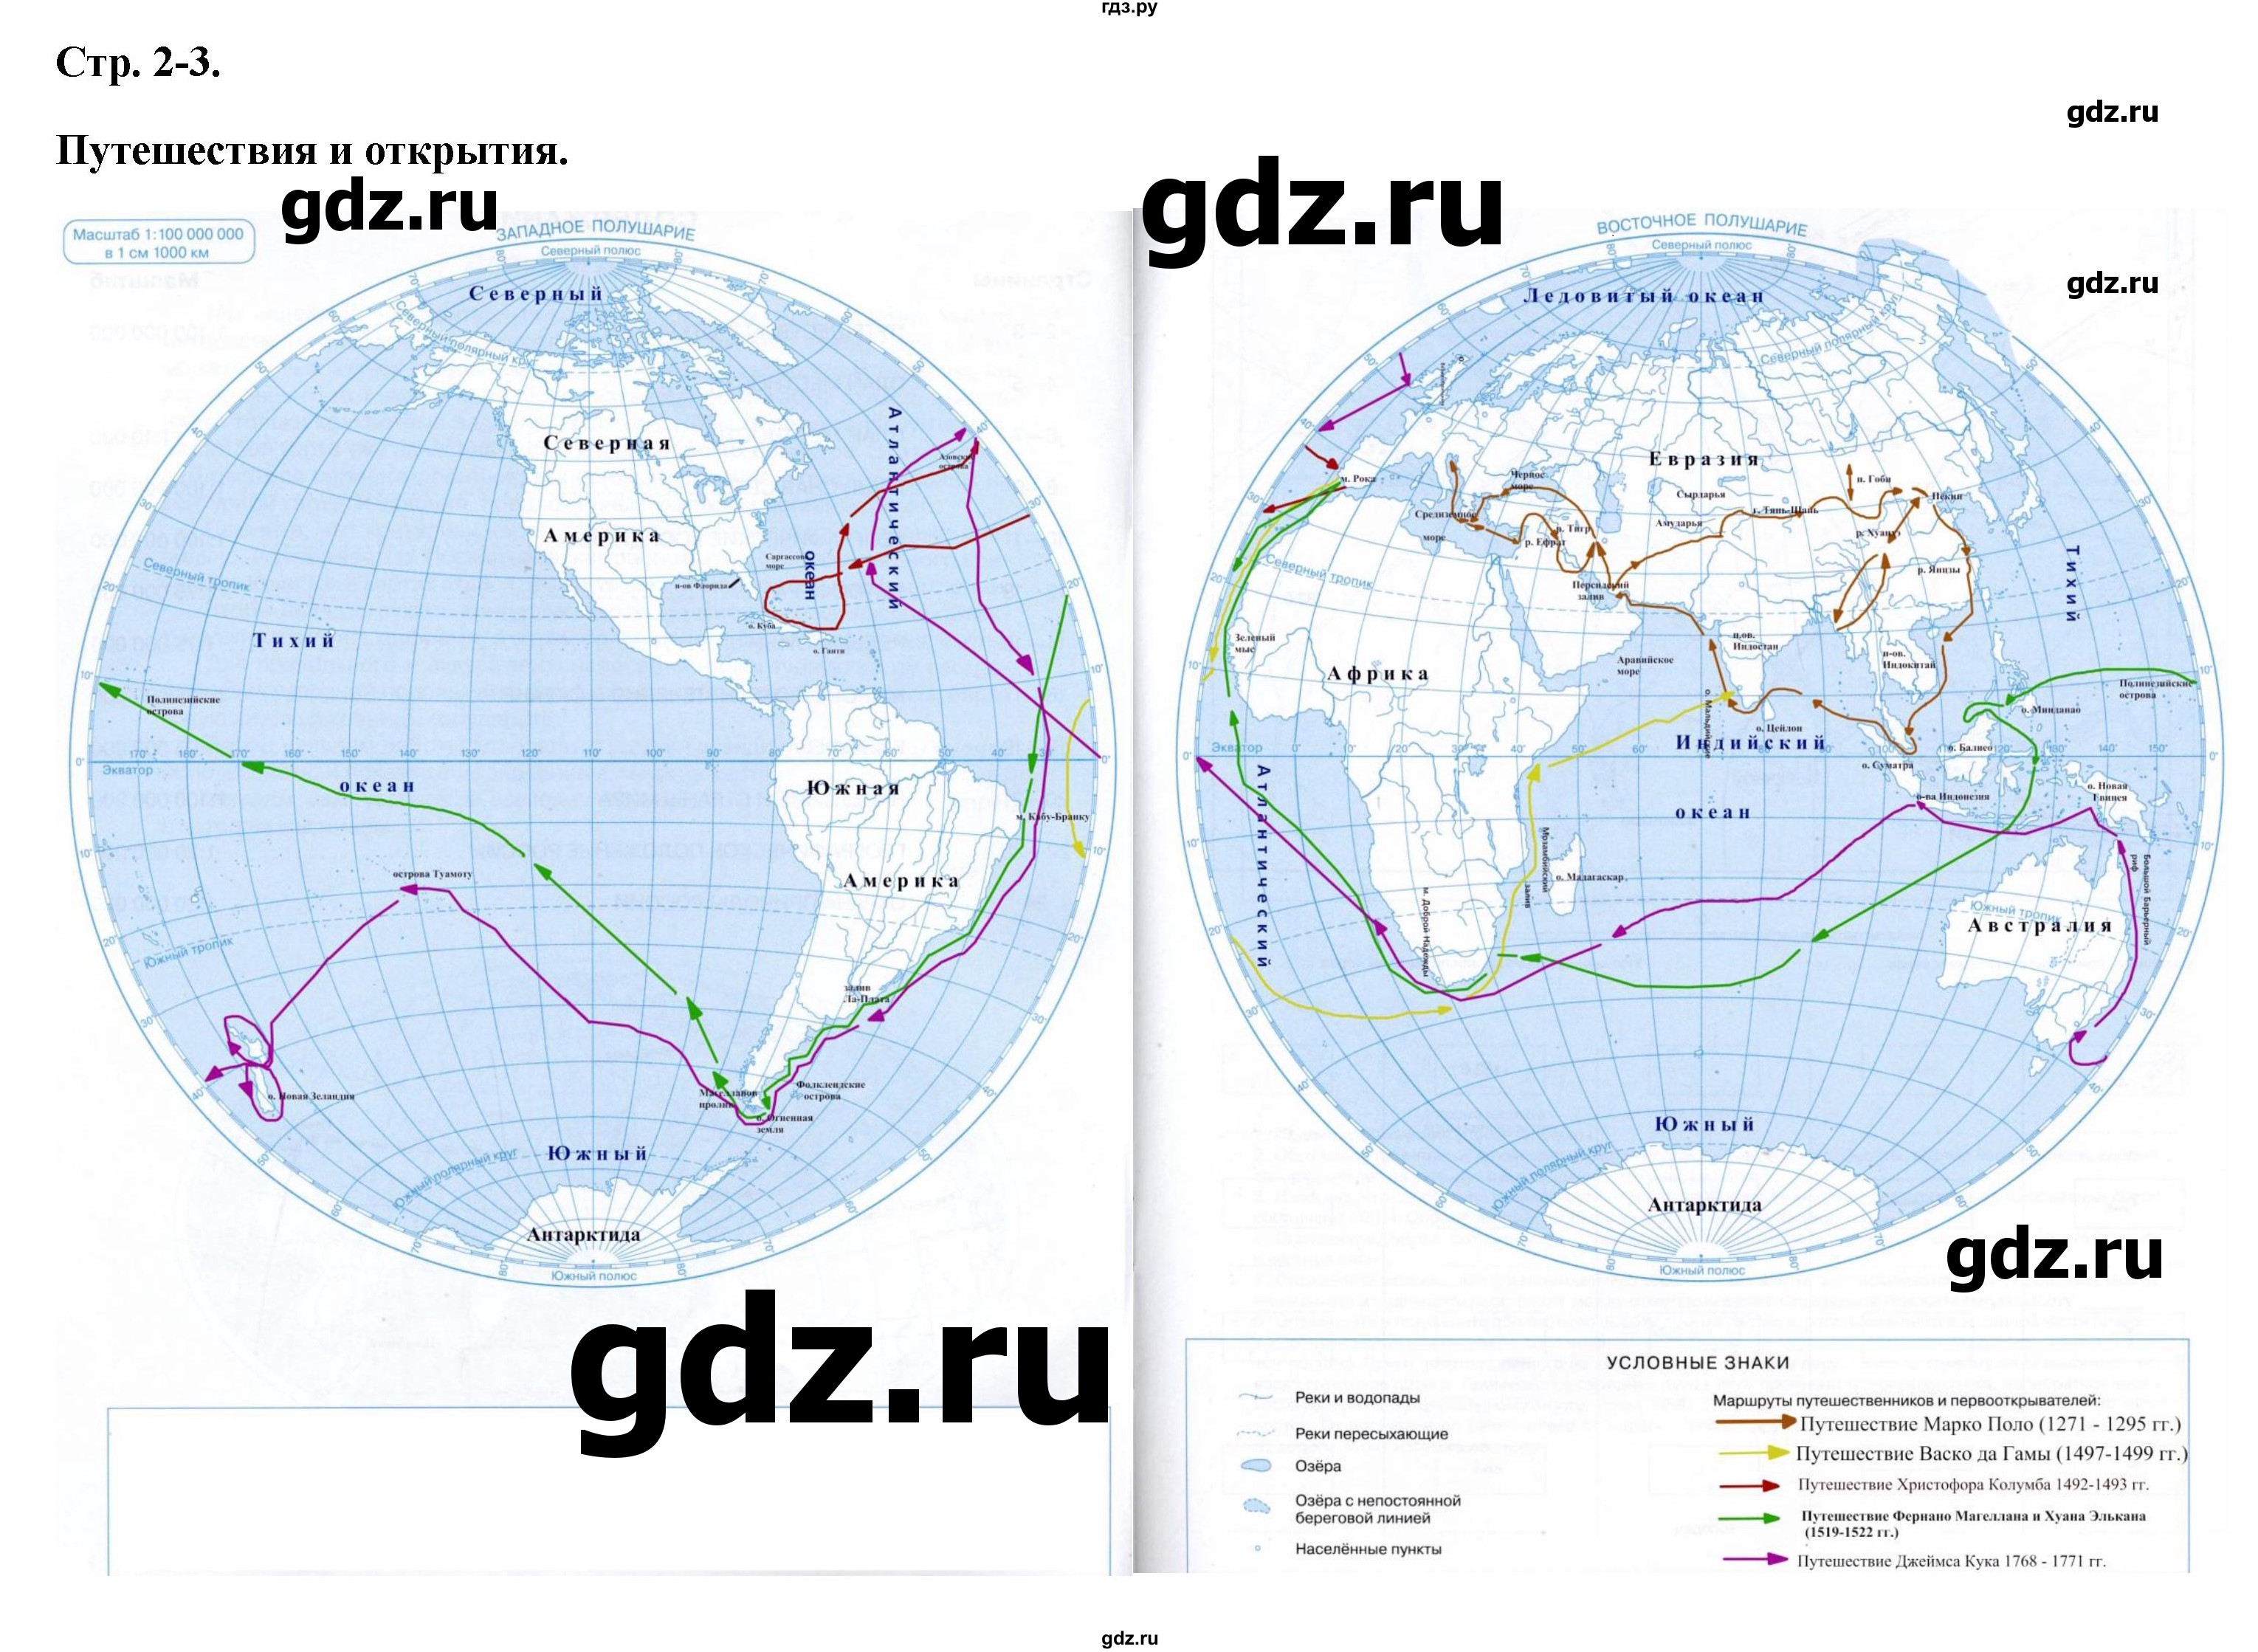 ГДЗ контурные карты стр.2-3 география 6 класс контурные карты Курбский,Курчина